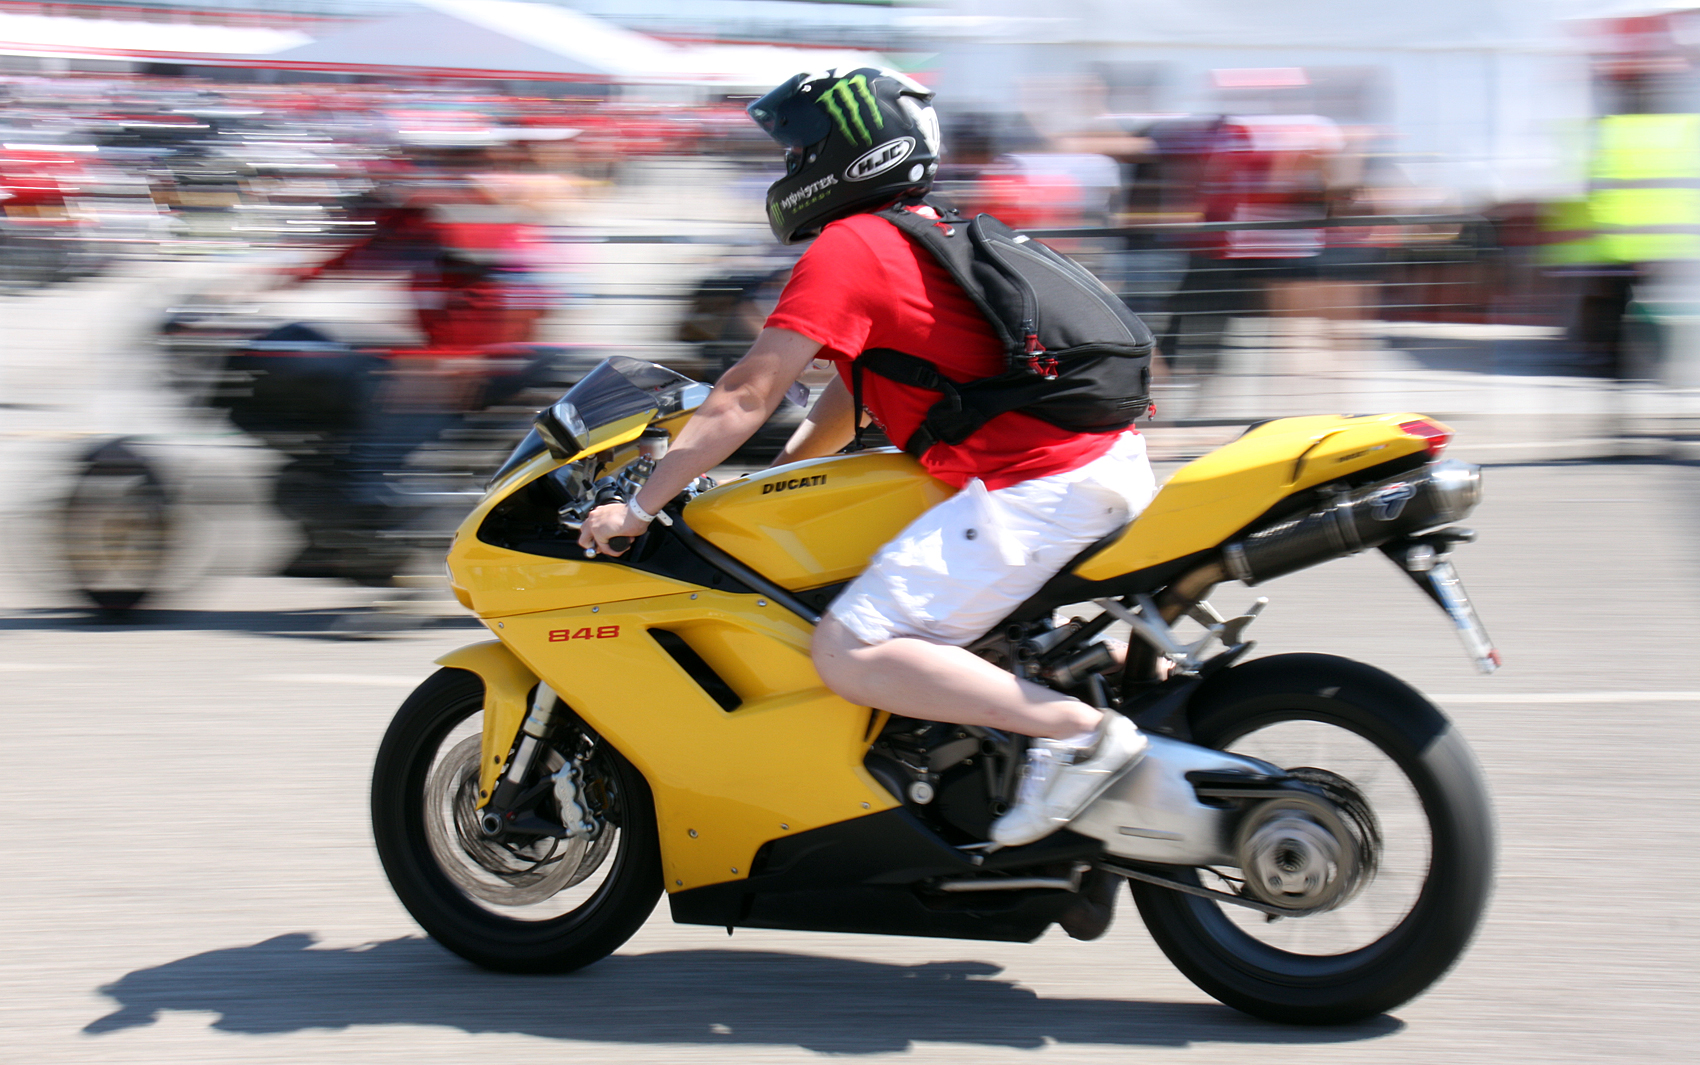 Motociclista chega ao encontro de motos na Itália com um esportiva